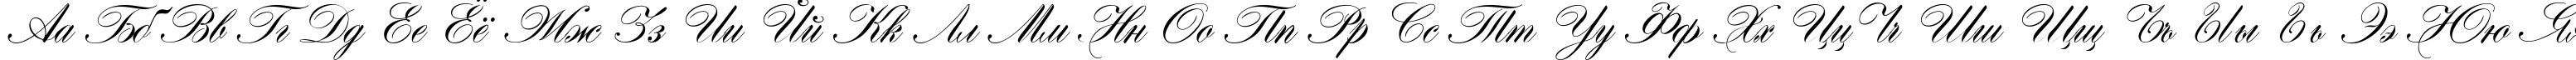 Пример написания русского алфавита шрифтом Hogarth script